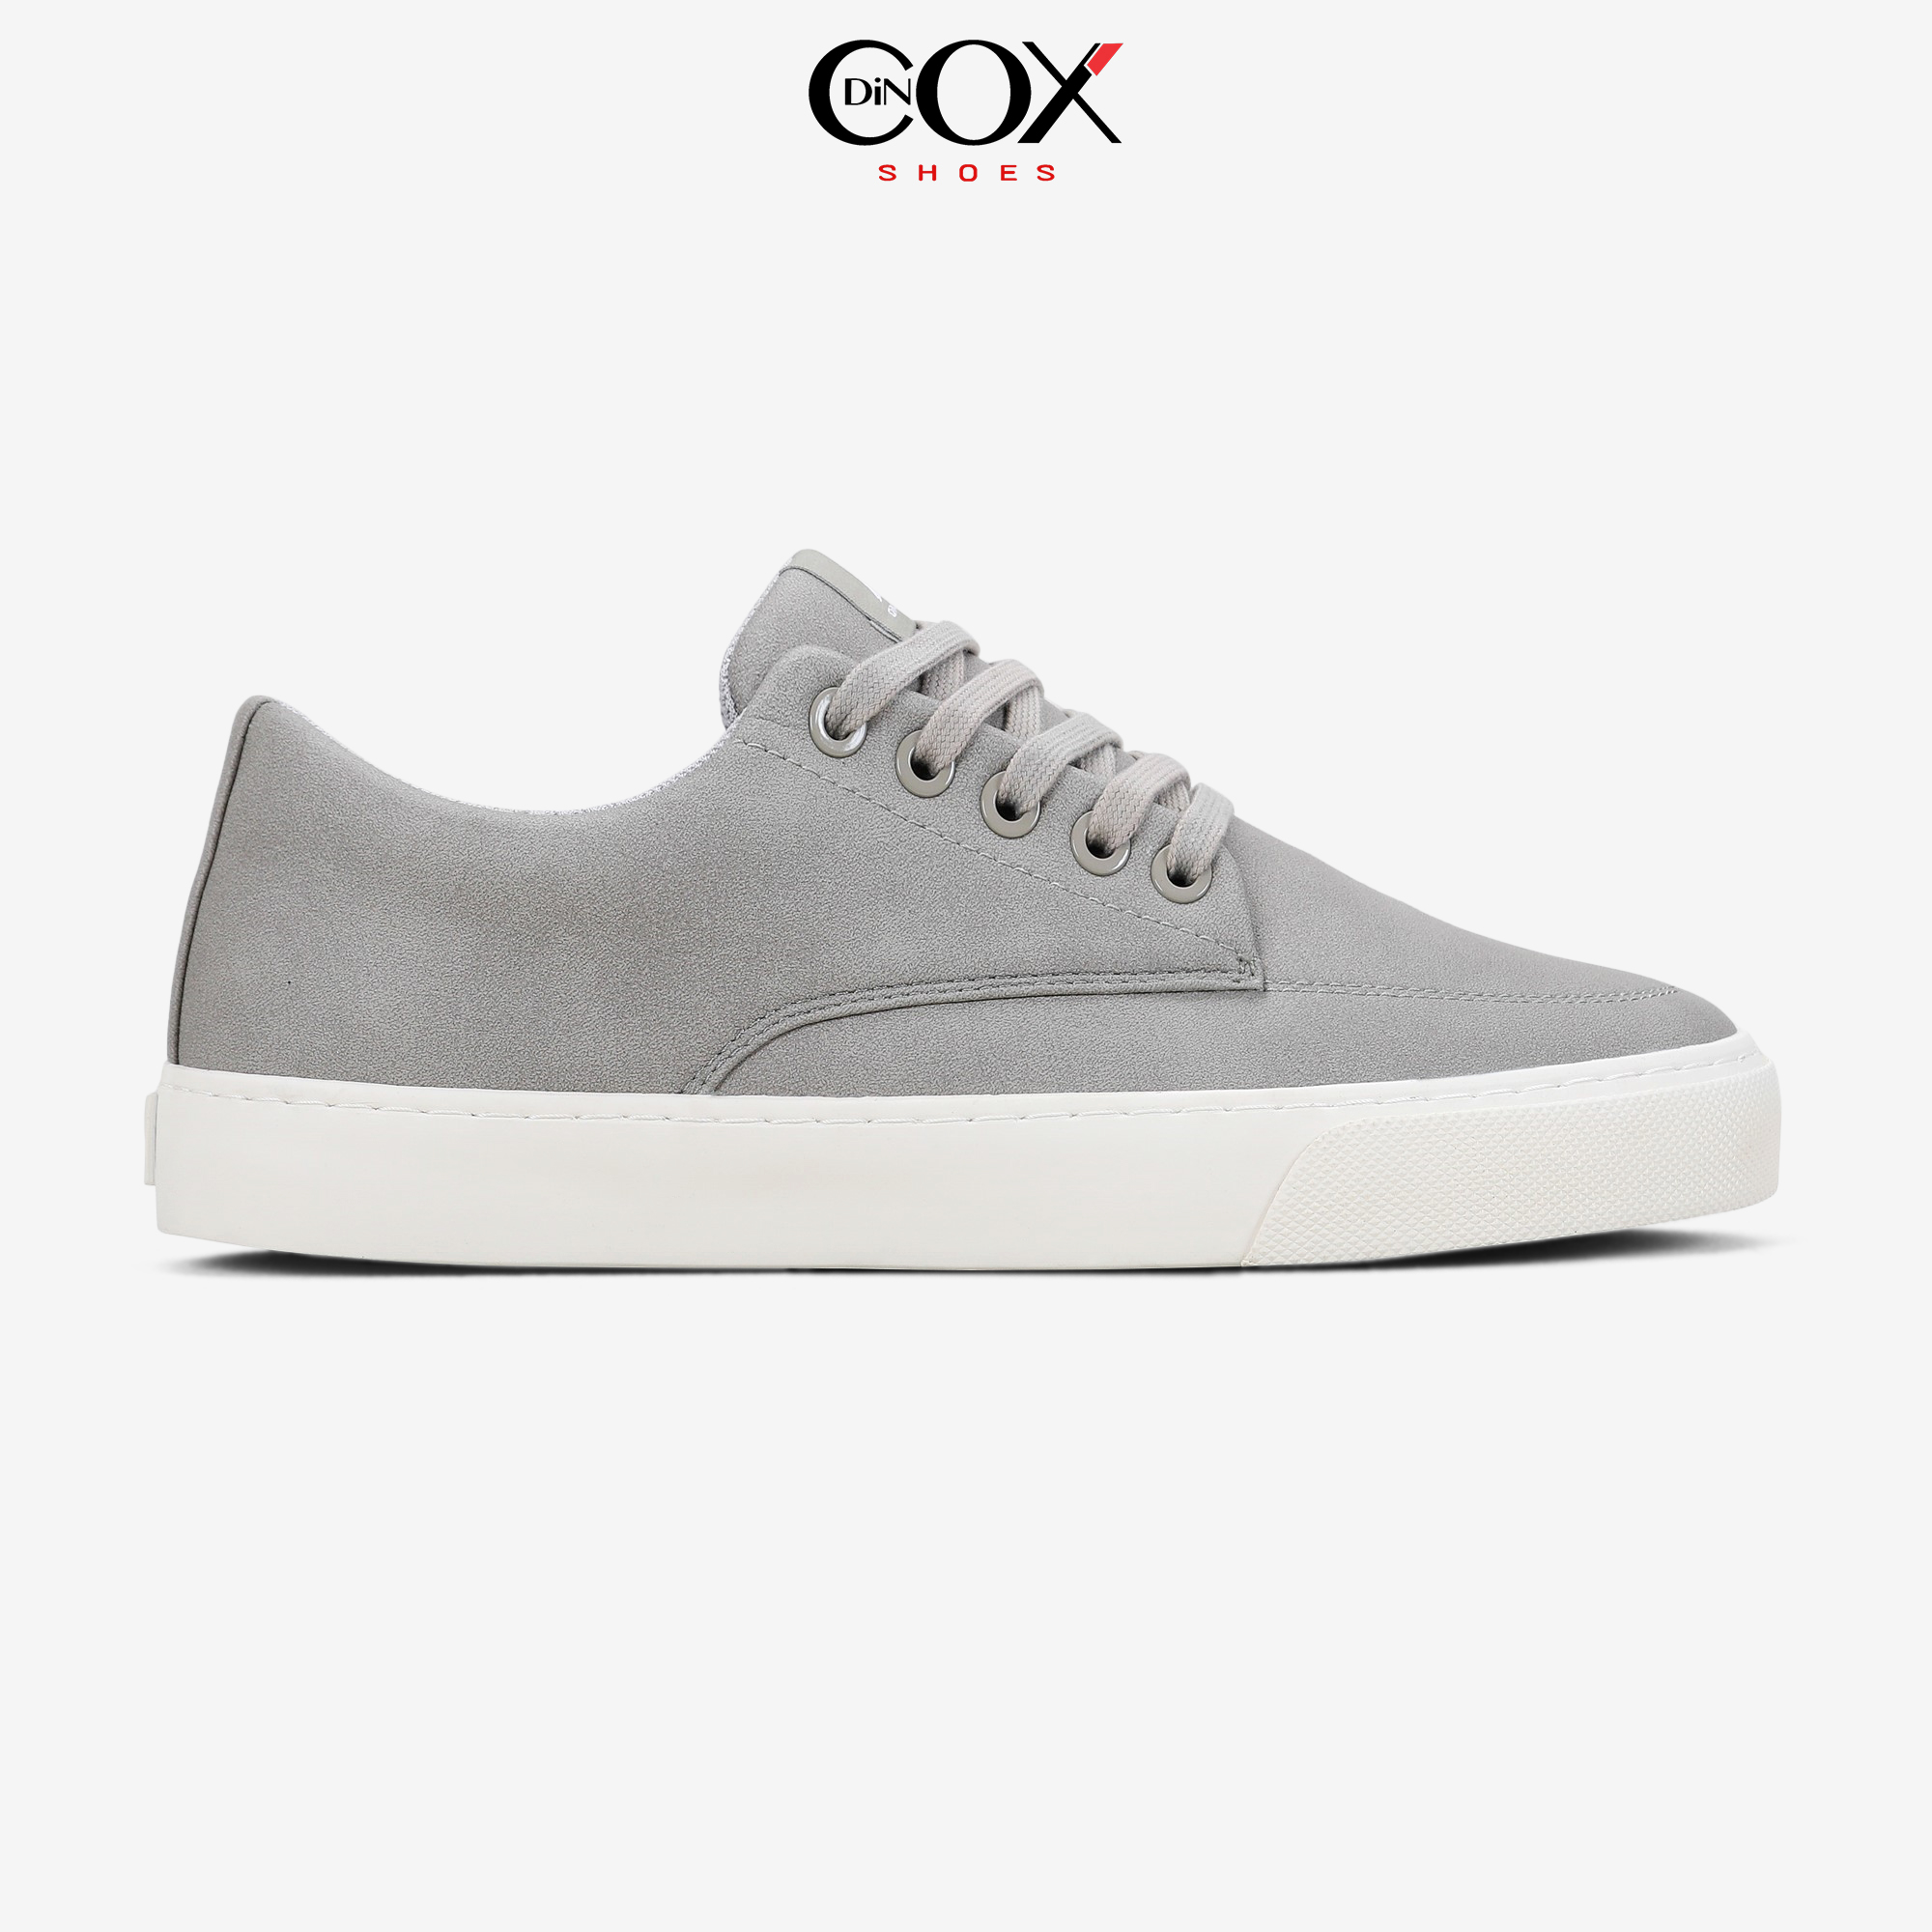 Giày Sneaker Dincox D06 L.Grey thumbnail